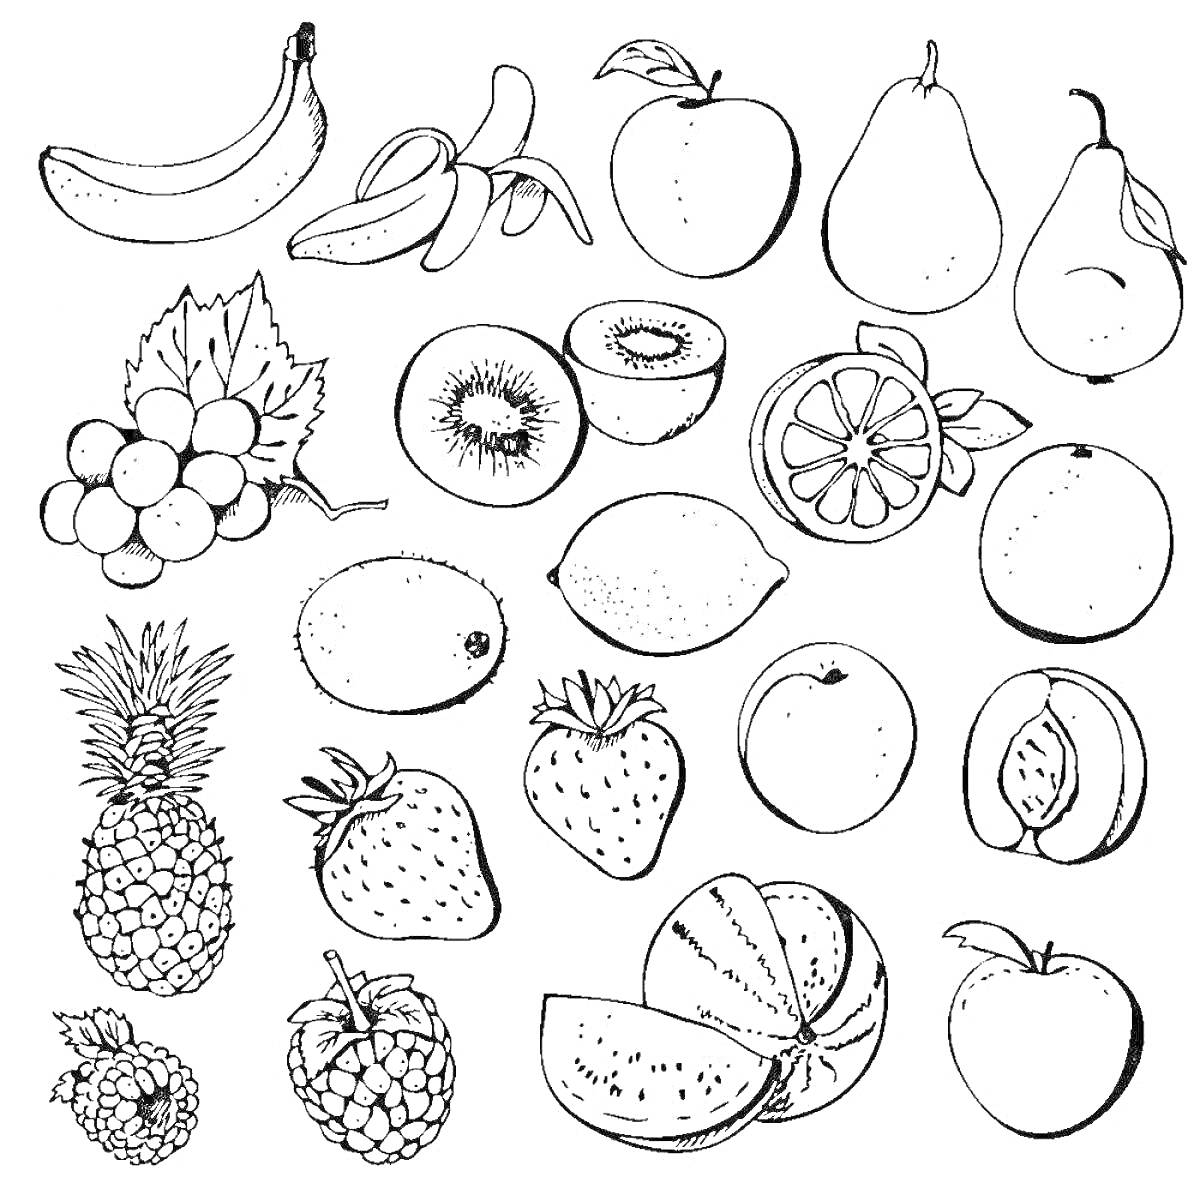 Раскраска Банан, нарезанный банан, груша, яблоко, гроздь винограда, киви, нарезанное киви, лимон, апельсин, ананас, клубника, персик, малина, арбуз, яблоко.